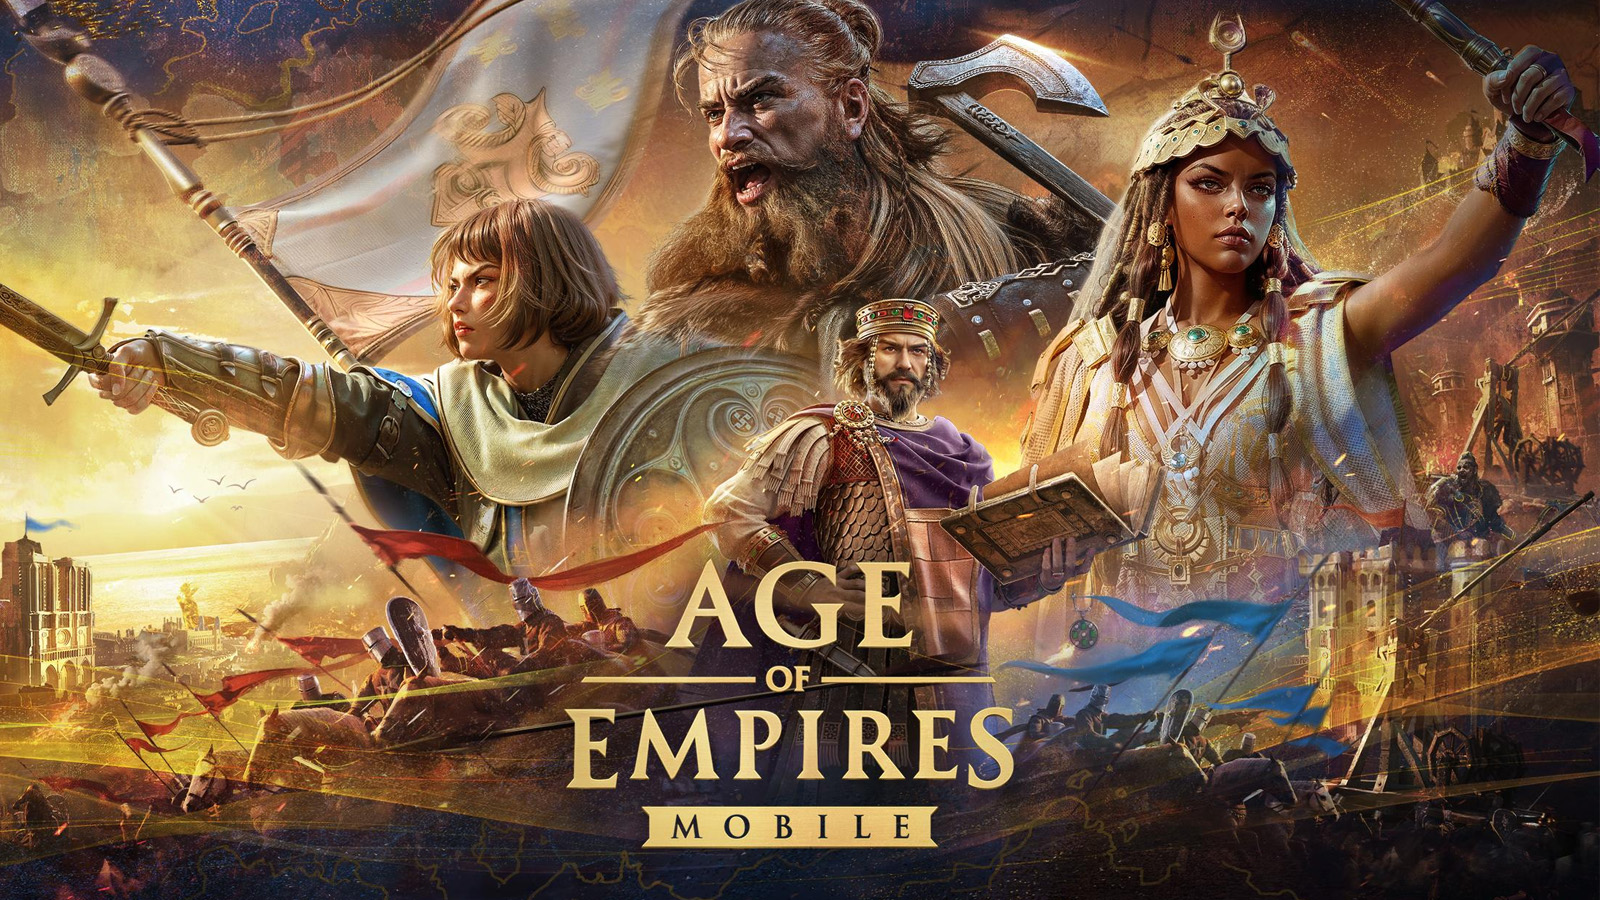 Đây là cách đăng ký trước để chơi Age of Empires bản Mobile trên Android và iOS